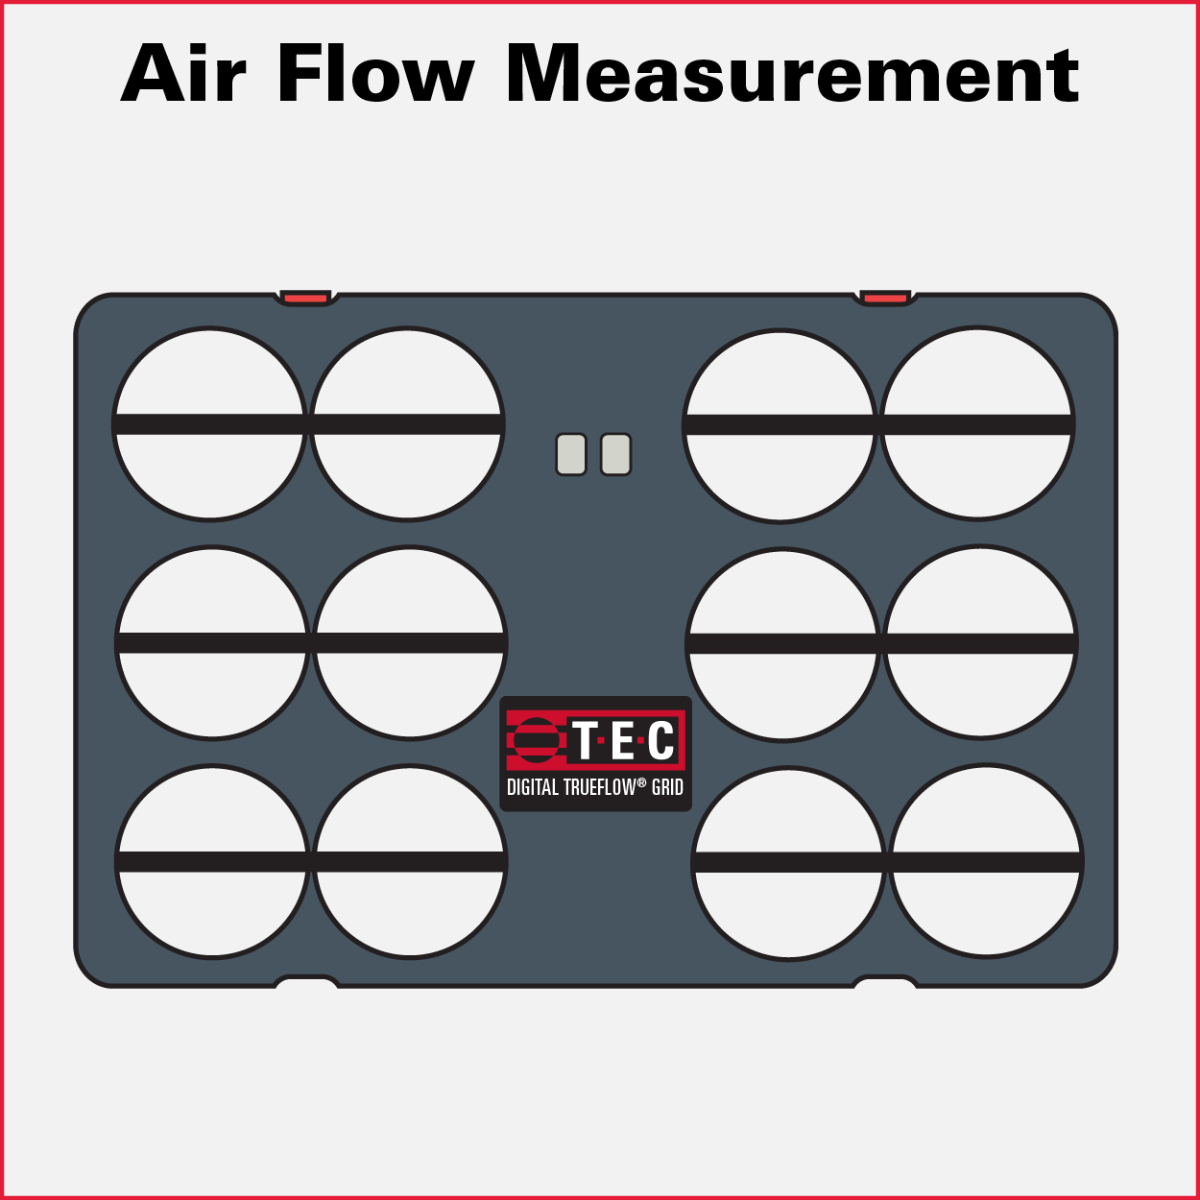 Air Flow Measurement